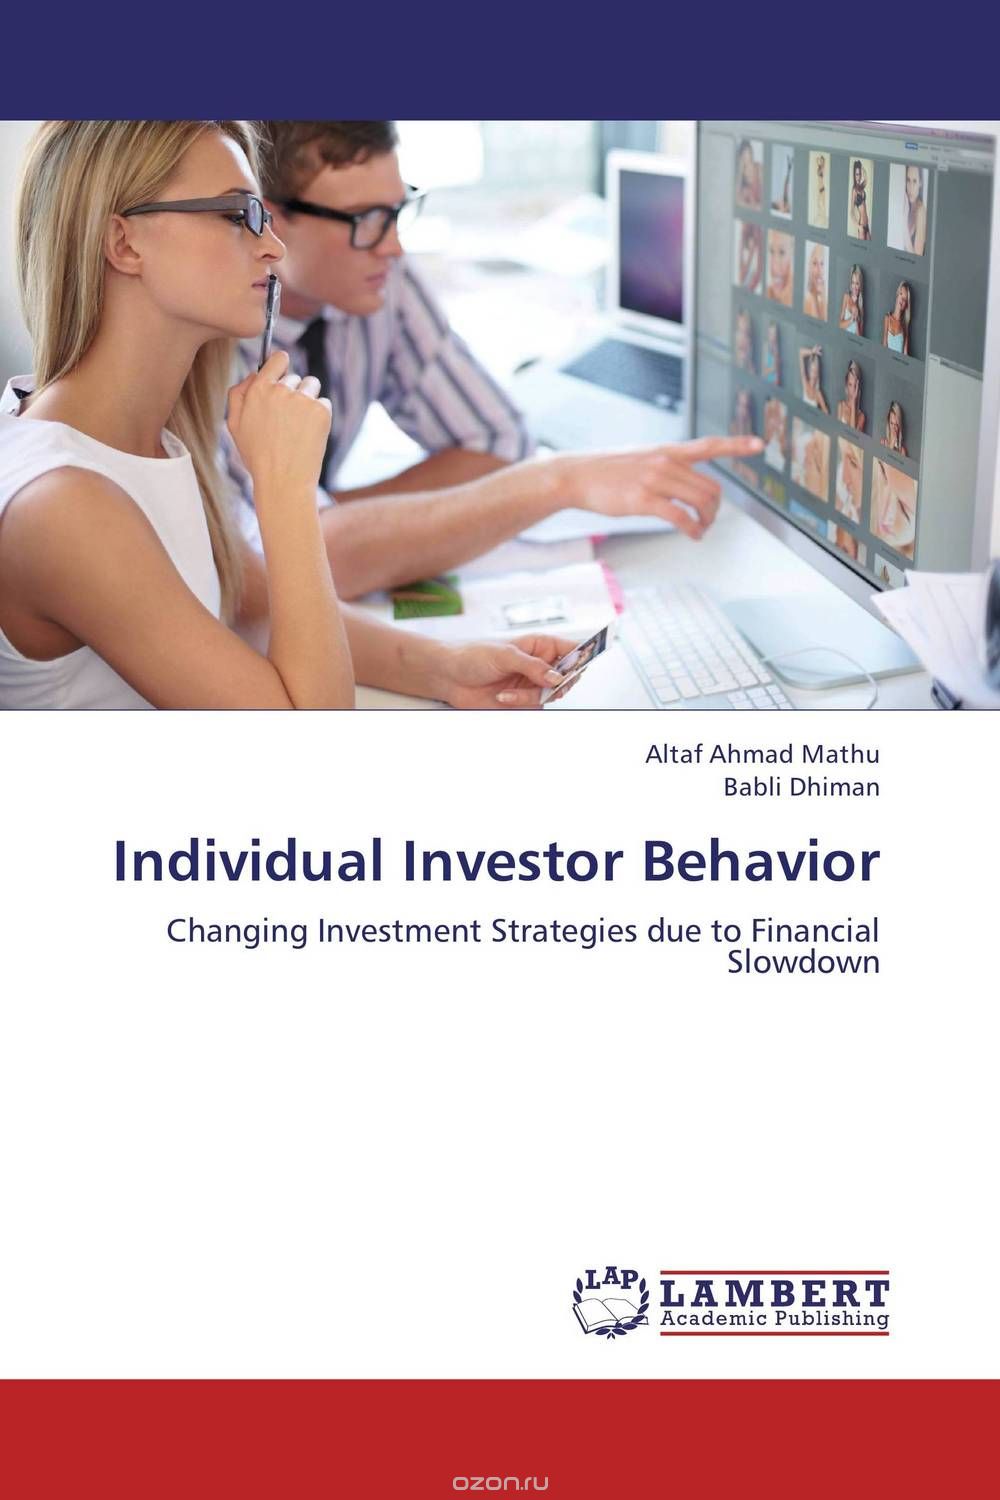 Скачать книгу "Individual Investor Behavior"